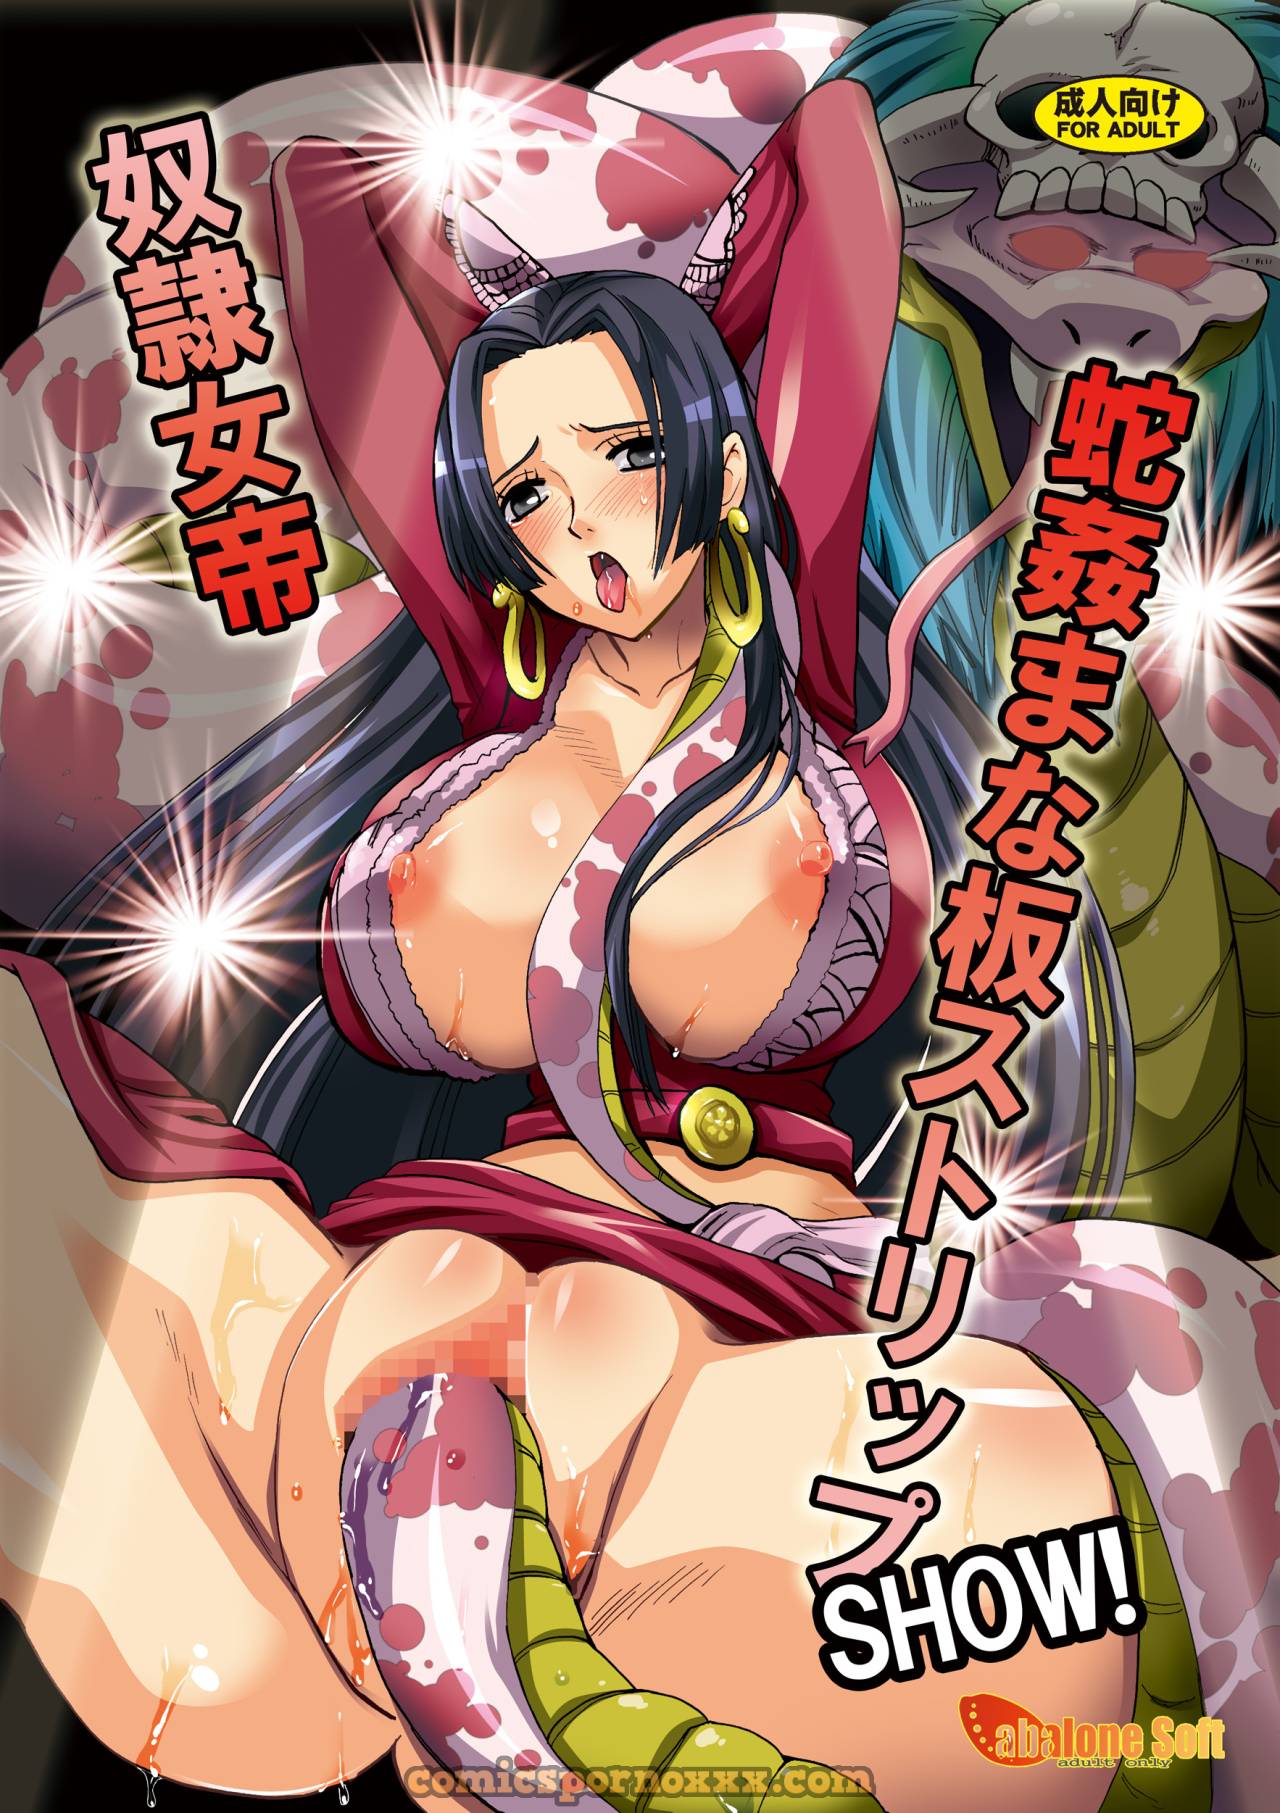 Slave Empress Snake Rape Strip Show - 1 - Comics Porno - Hentai Manga - Cartoon XXX